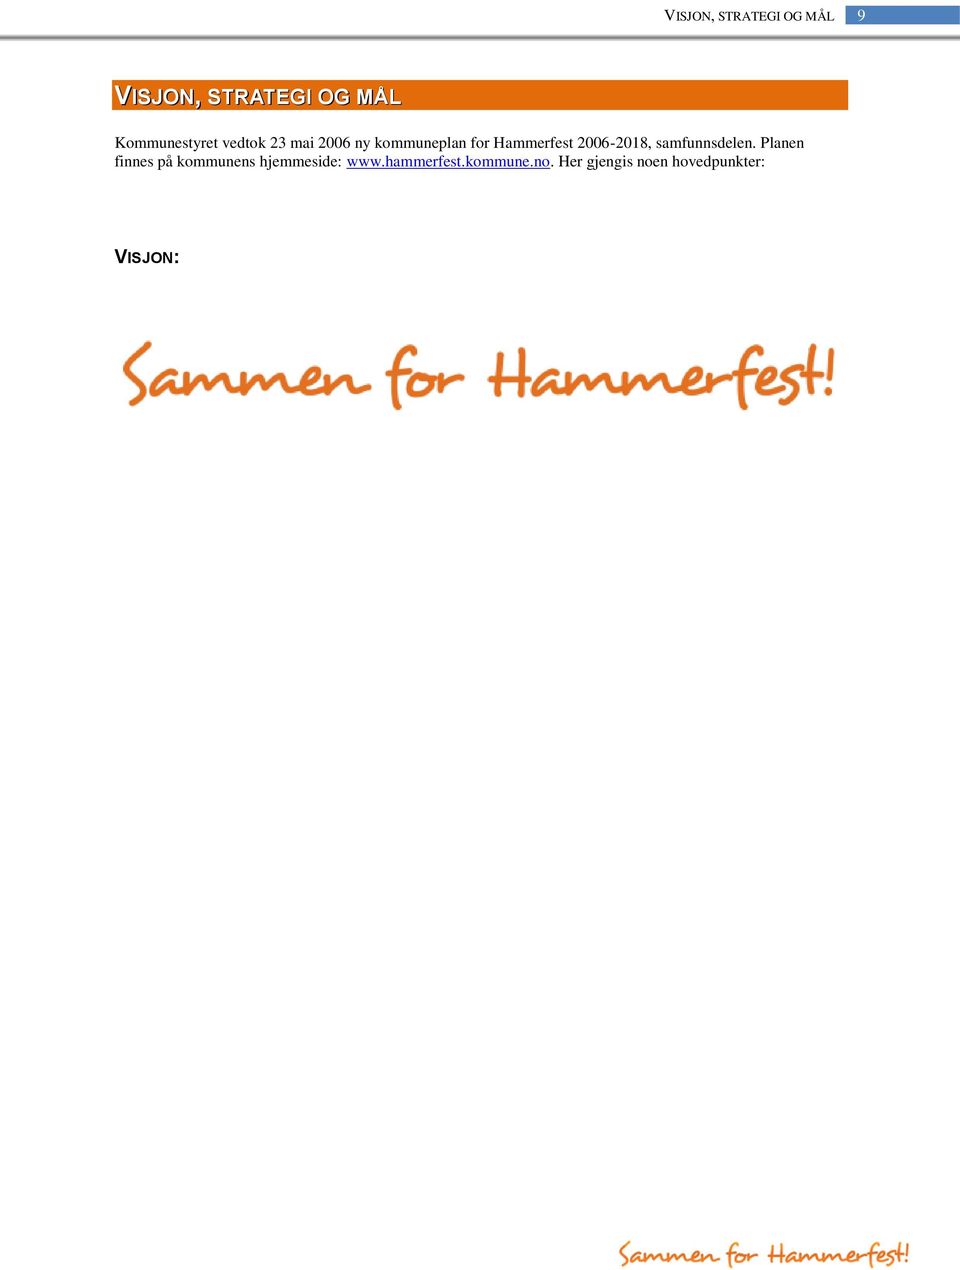 Hammerfest 2006-2018, samfunnsdelen.